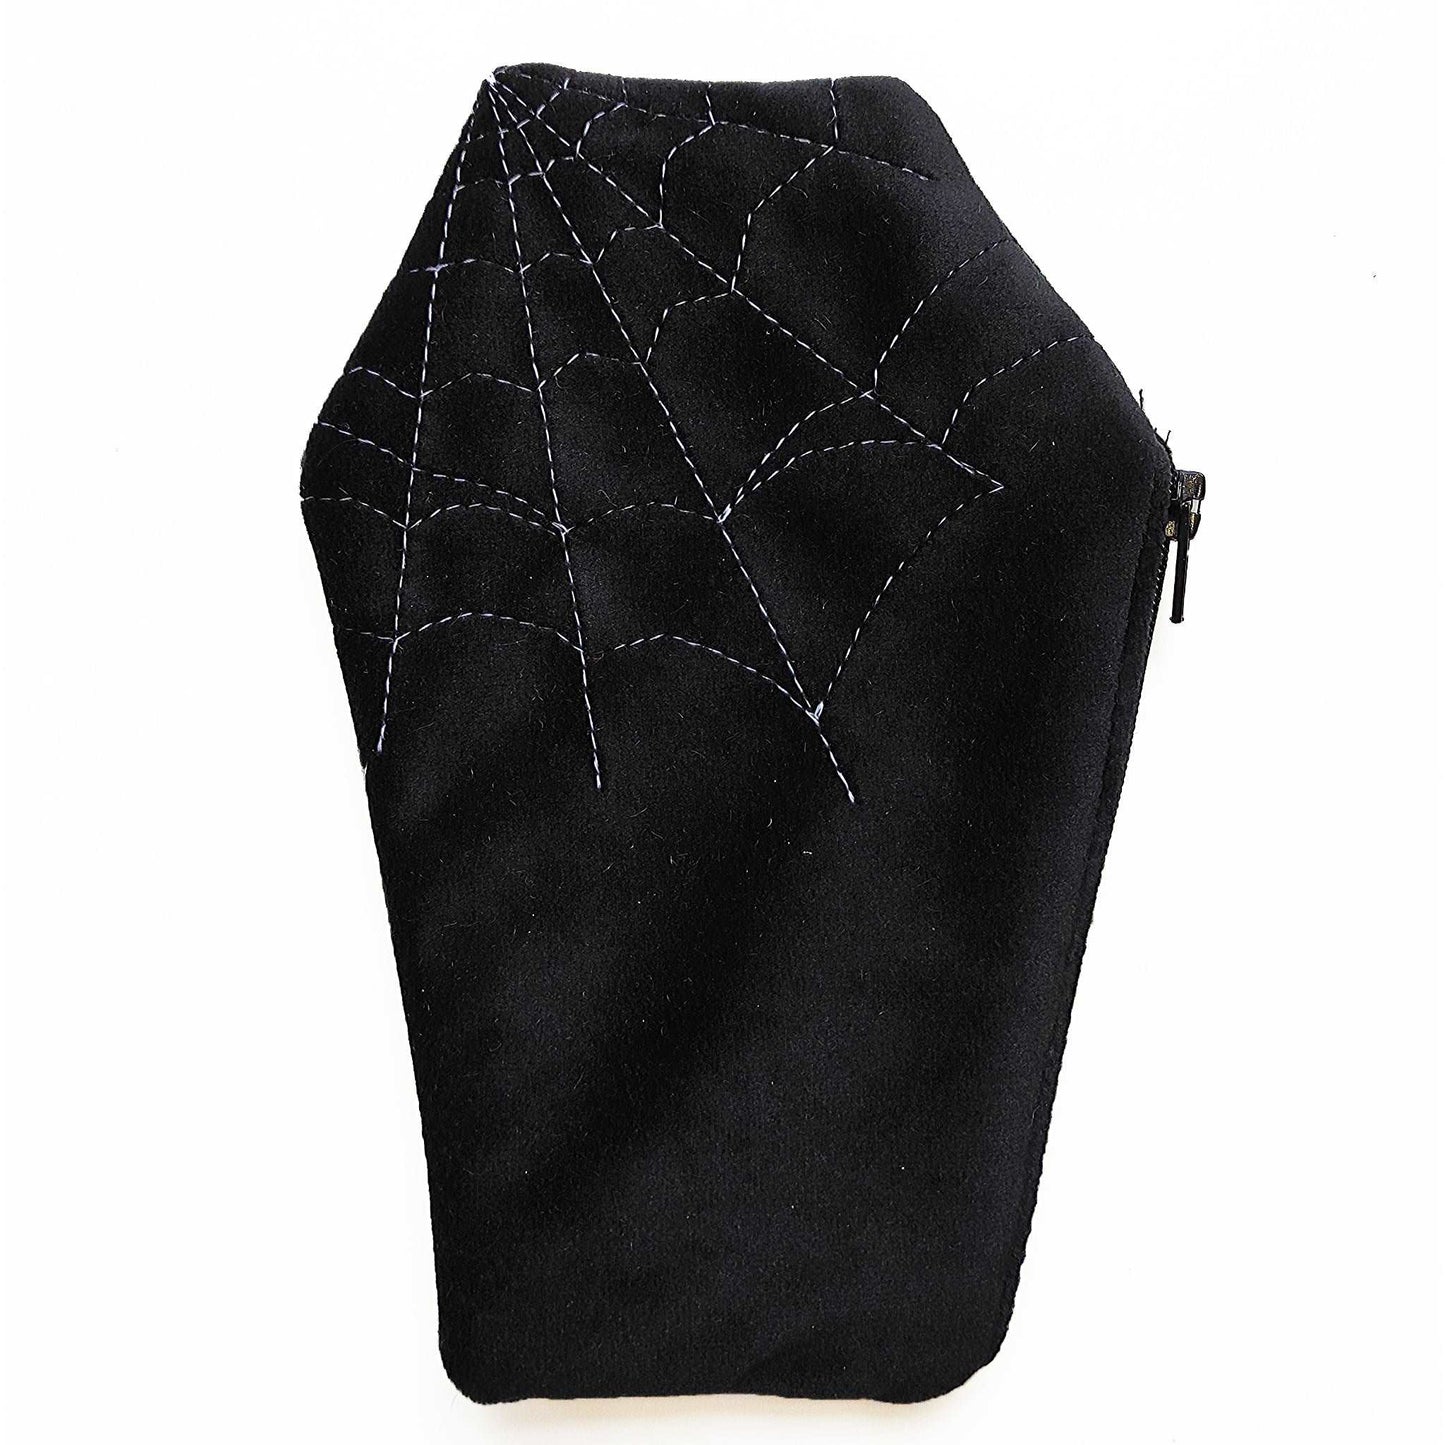 Sargförmiges Reißverschluss Täschchen aus Samtstoff mit drauf genähtem Spinnennetz und gruseligem Futter.